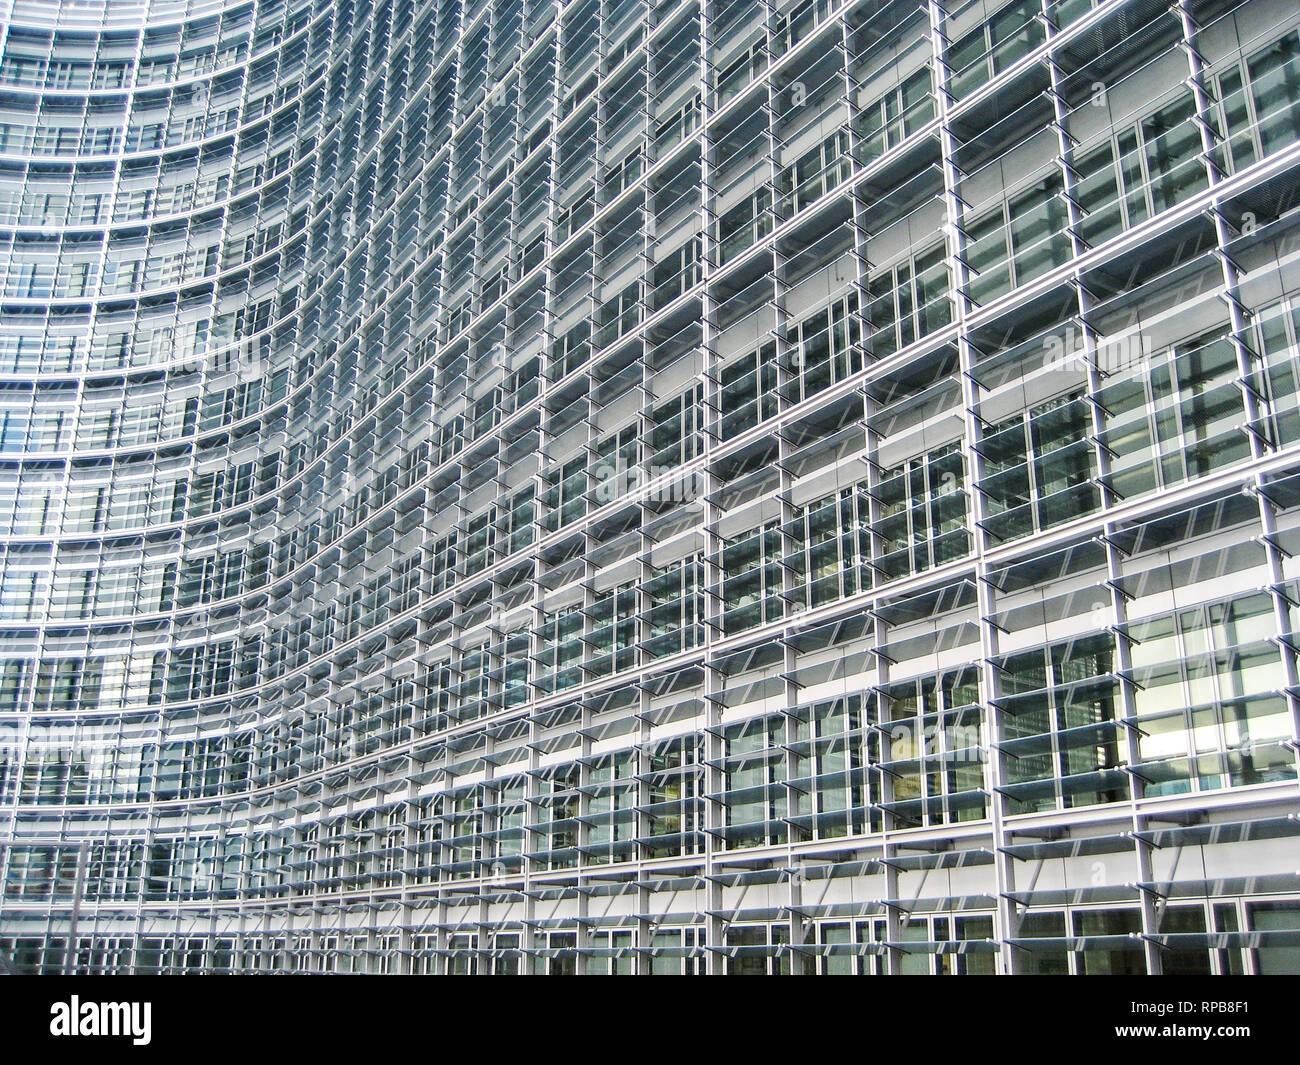 European Parliament, Brussels, Belgium Stock Photo